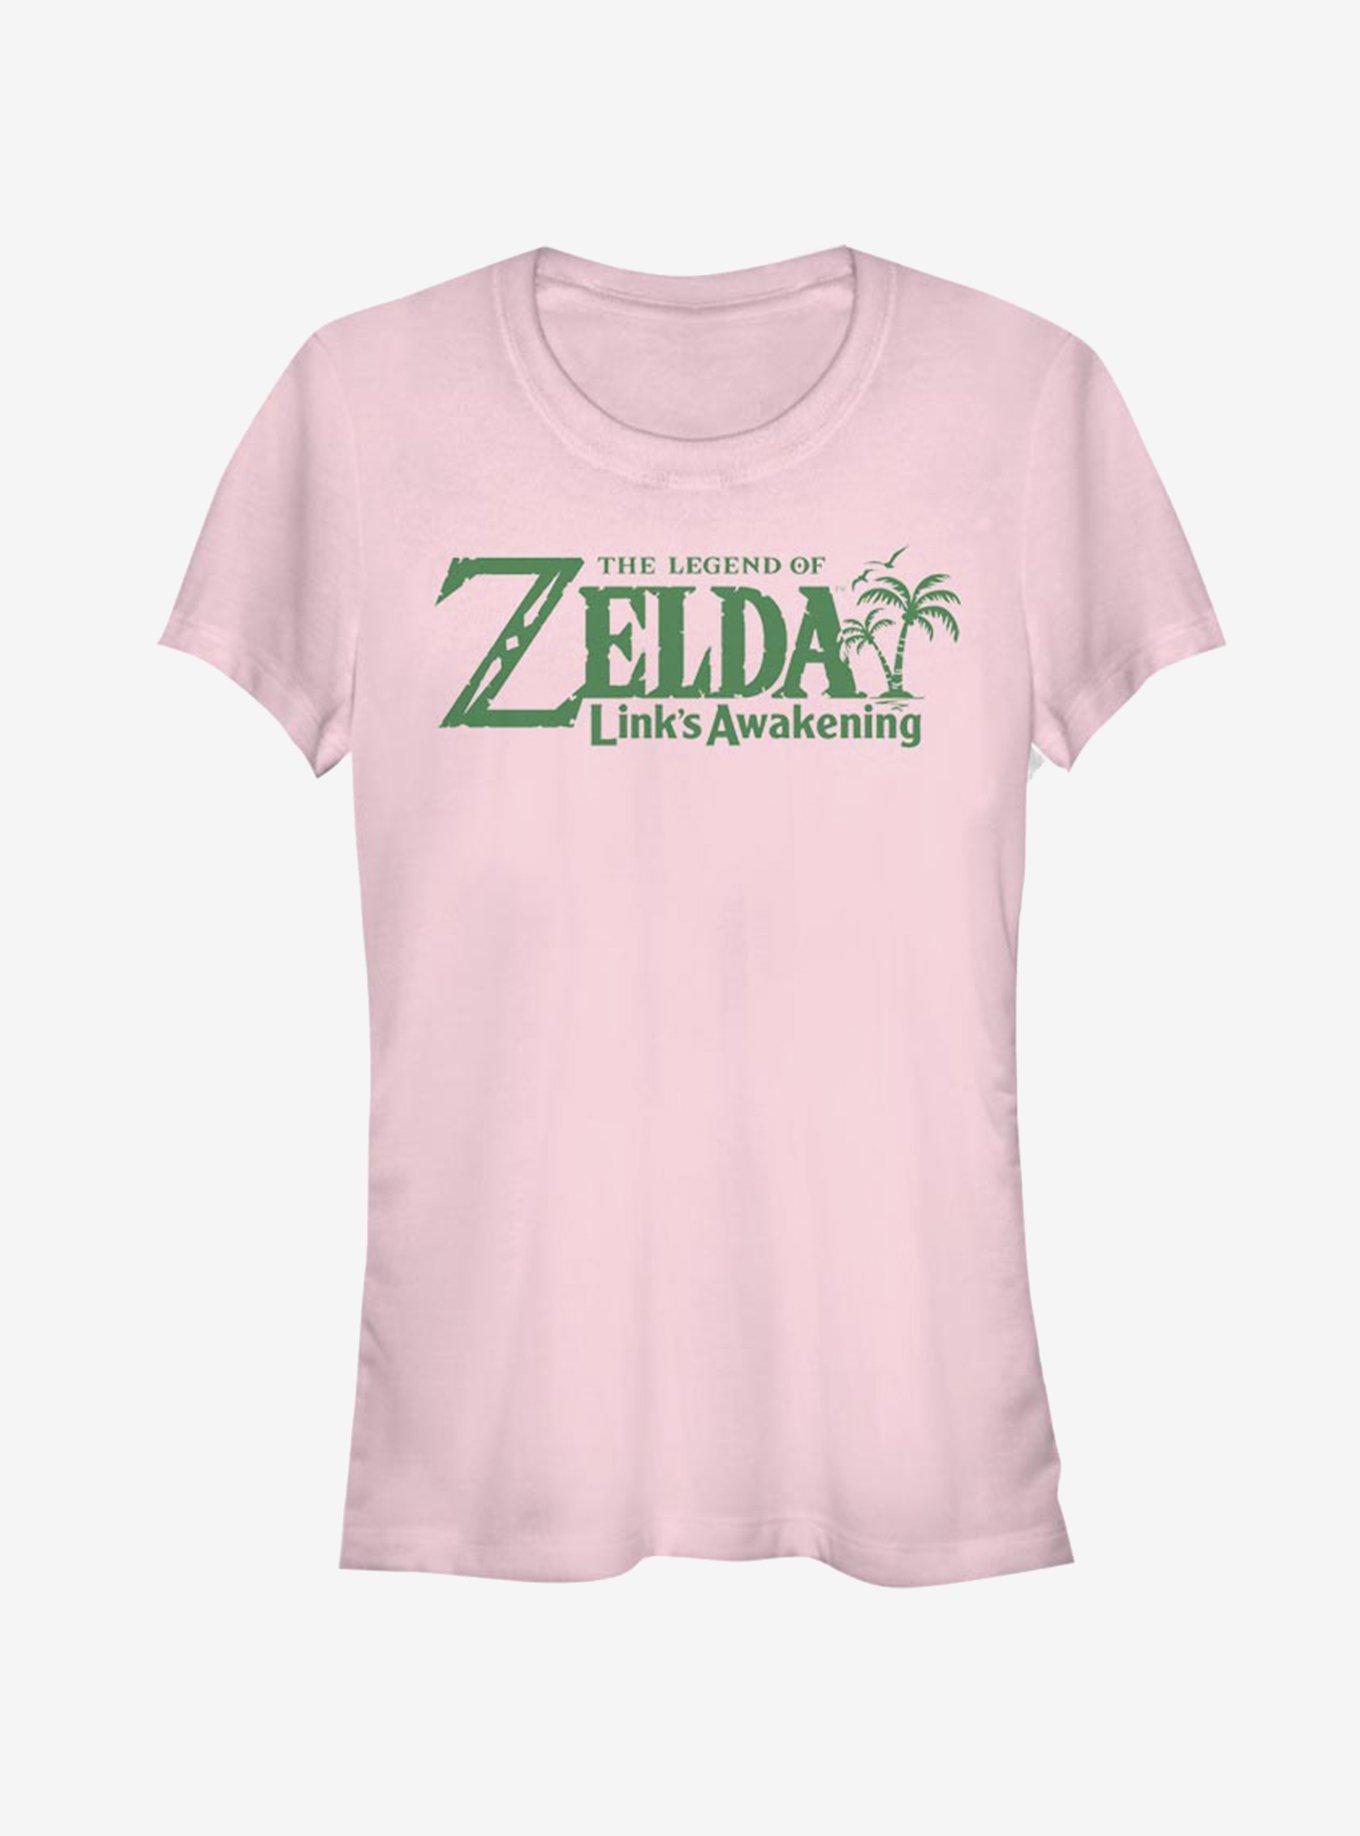 Nintendo The Legend of Zelda Logo Girls T-Shirt, LIGHT PINK, hi-res